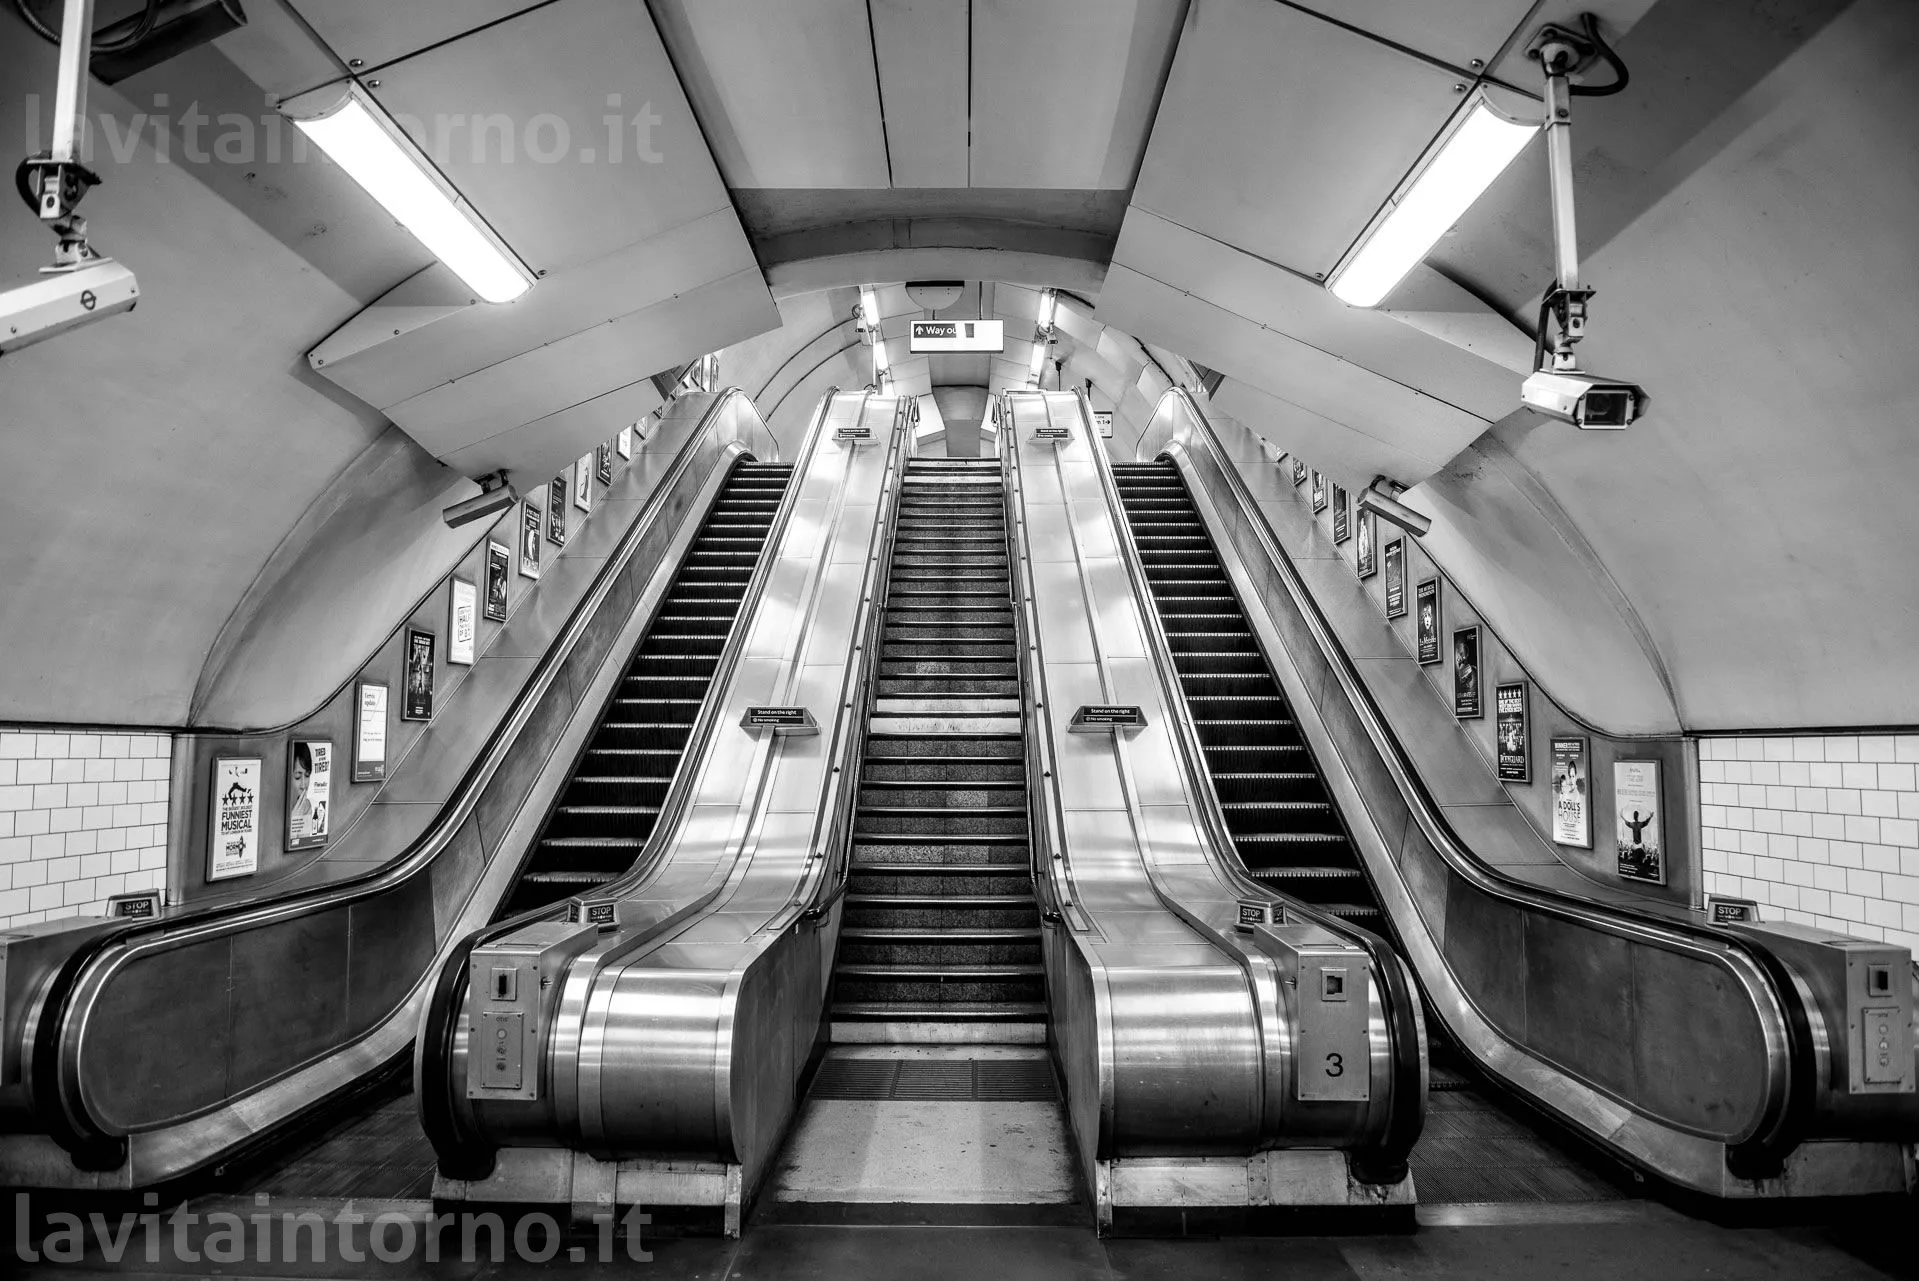 London - Underground #1
D800E
Nikkor 24-70 F/2.8G AF-S